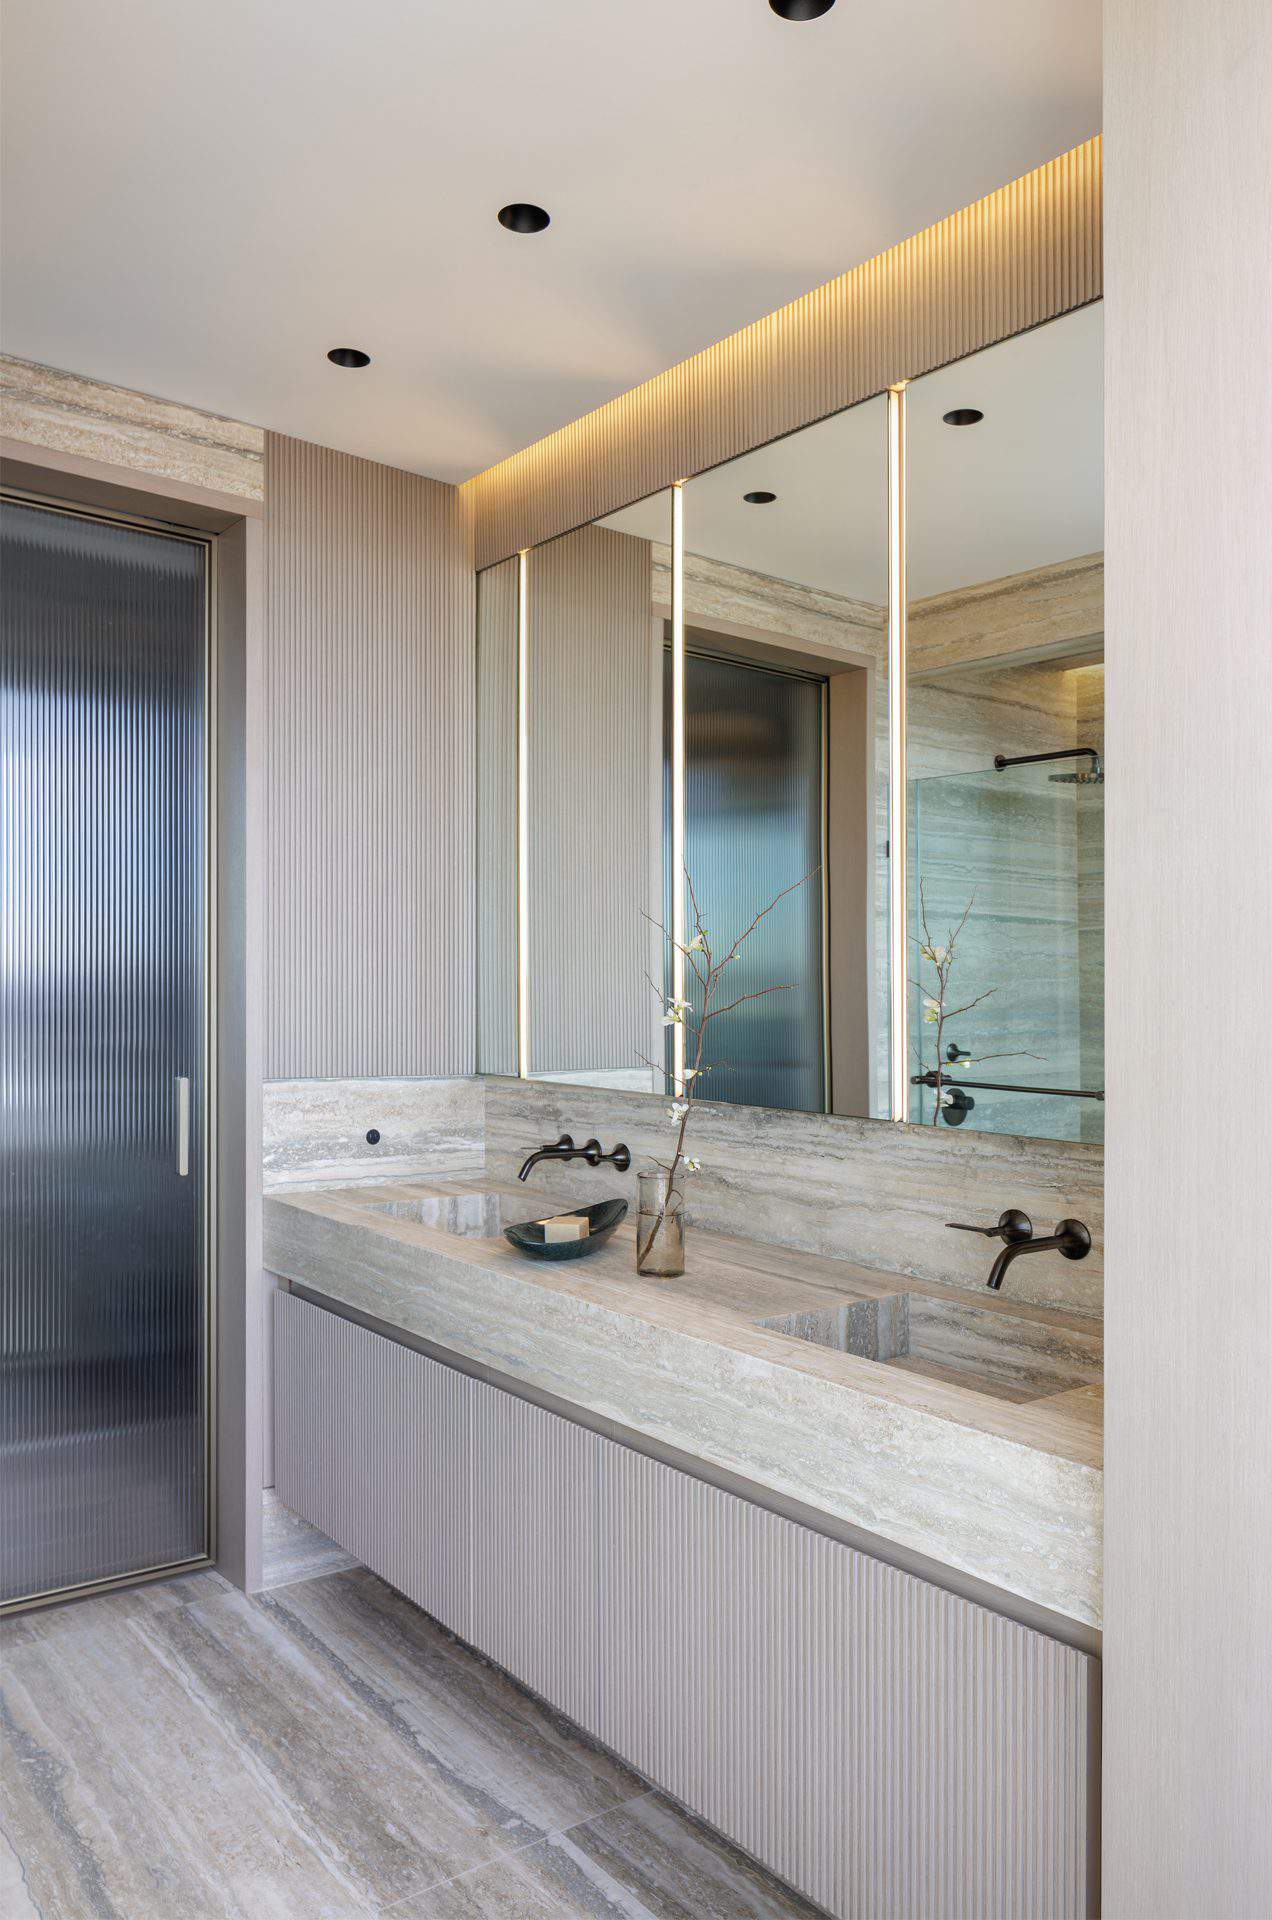 Earth-toned bathroom with Bilotta double sink vanity, pocket glass door